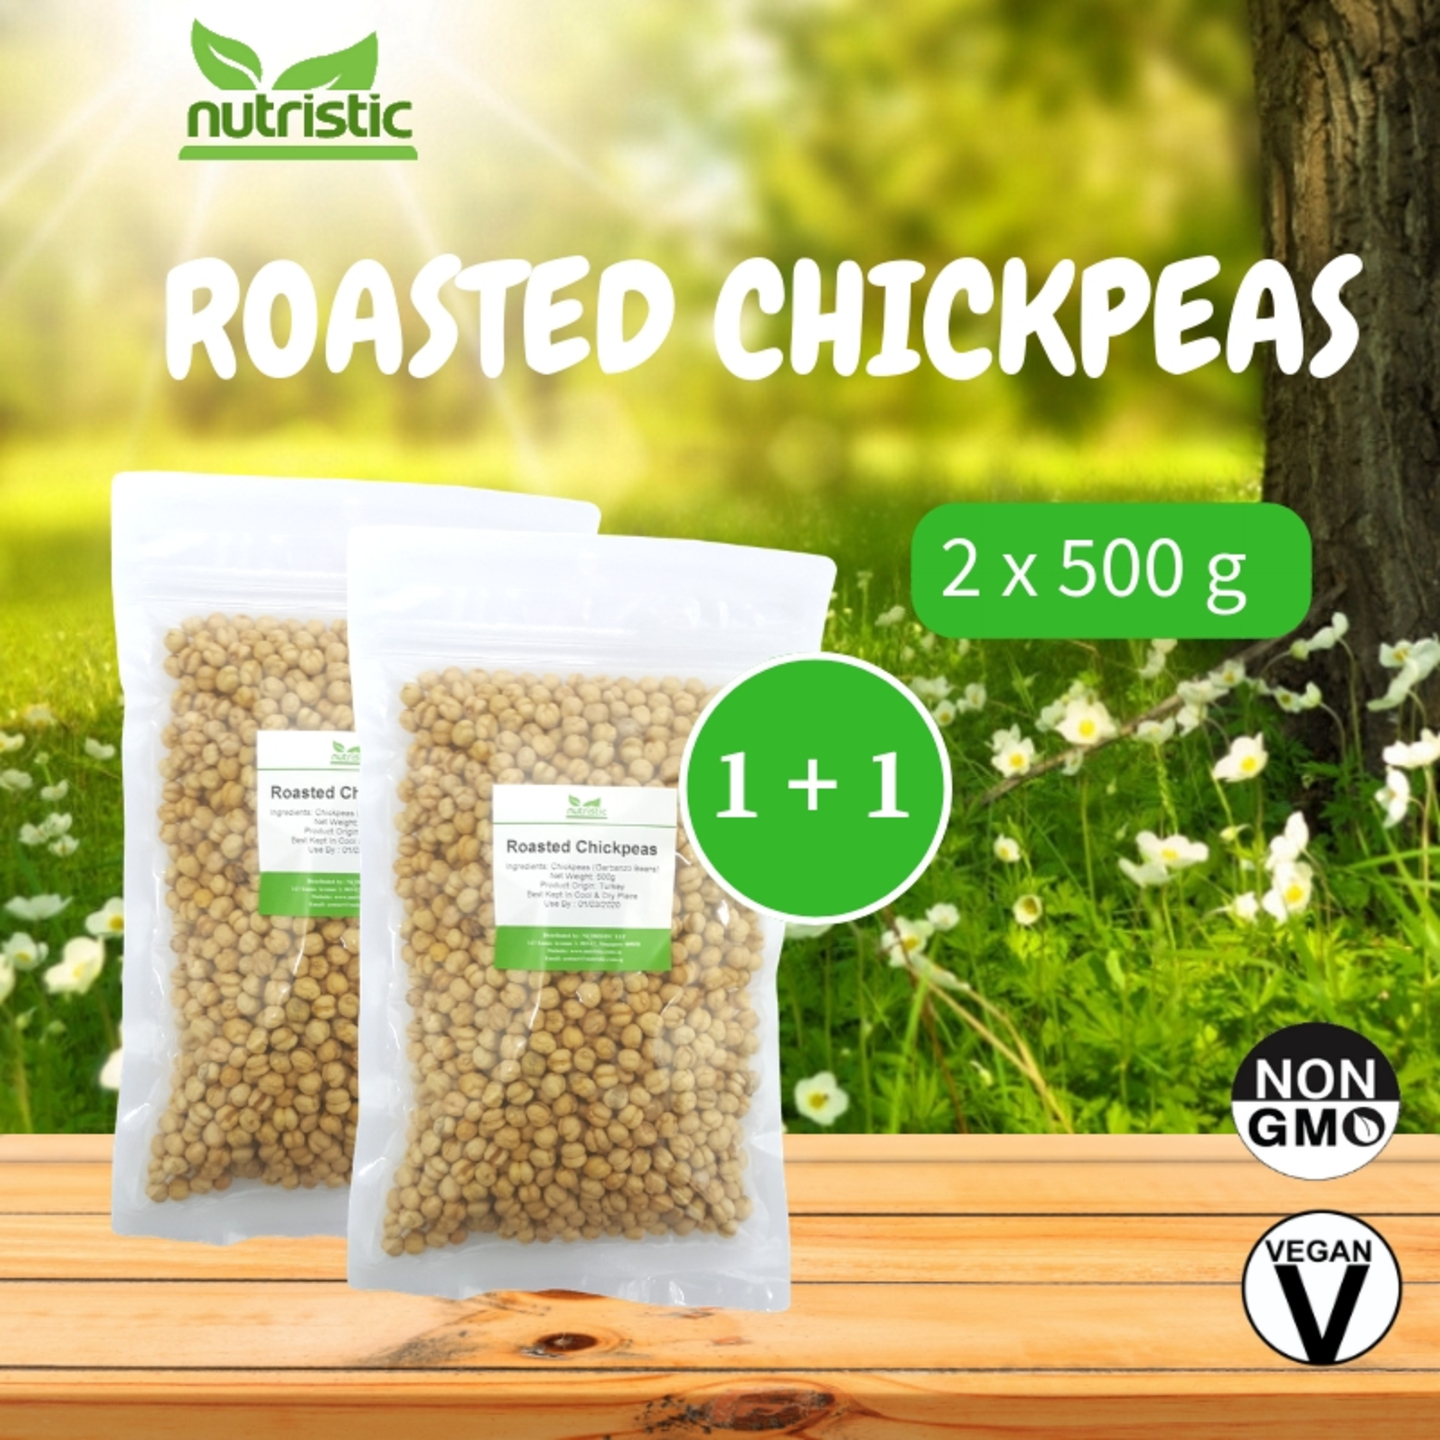 Roasted Chickpeas 500g x2 - Value Bundle 1+1